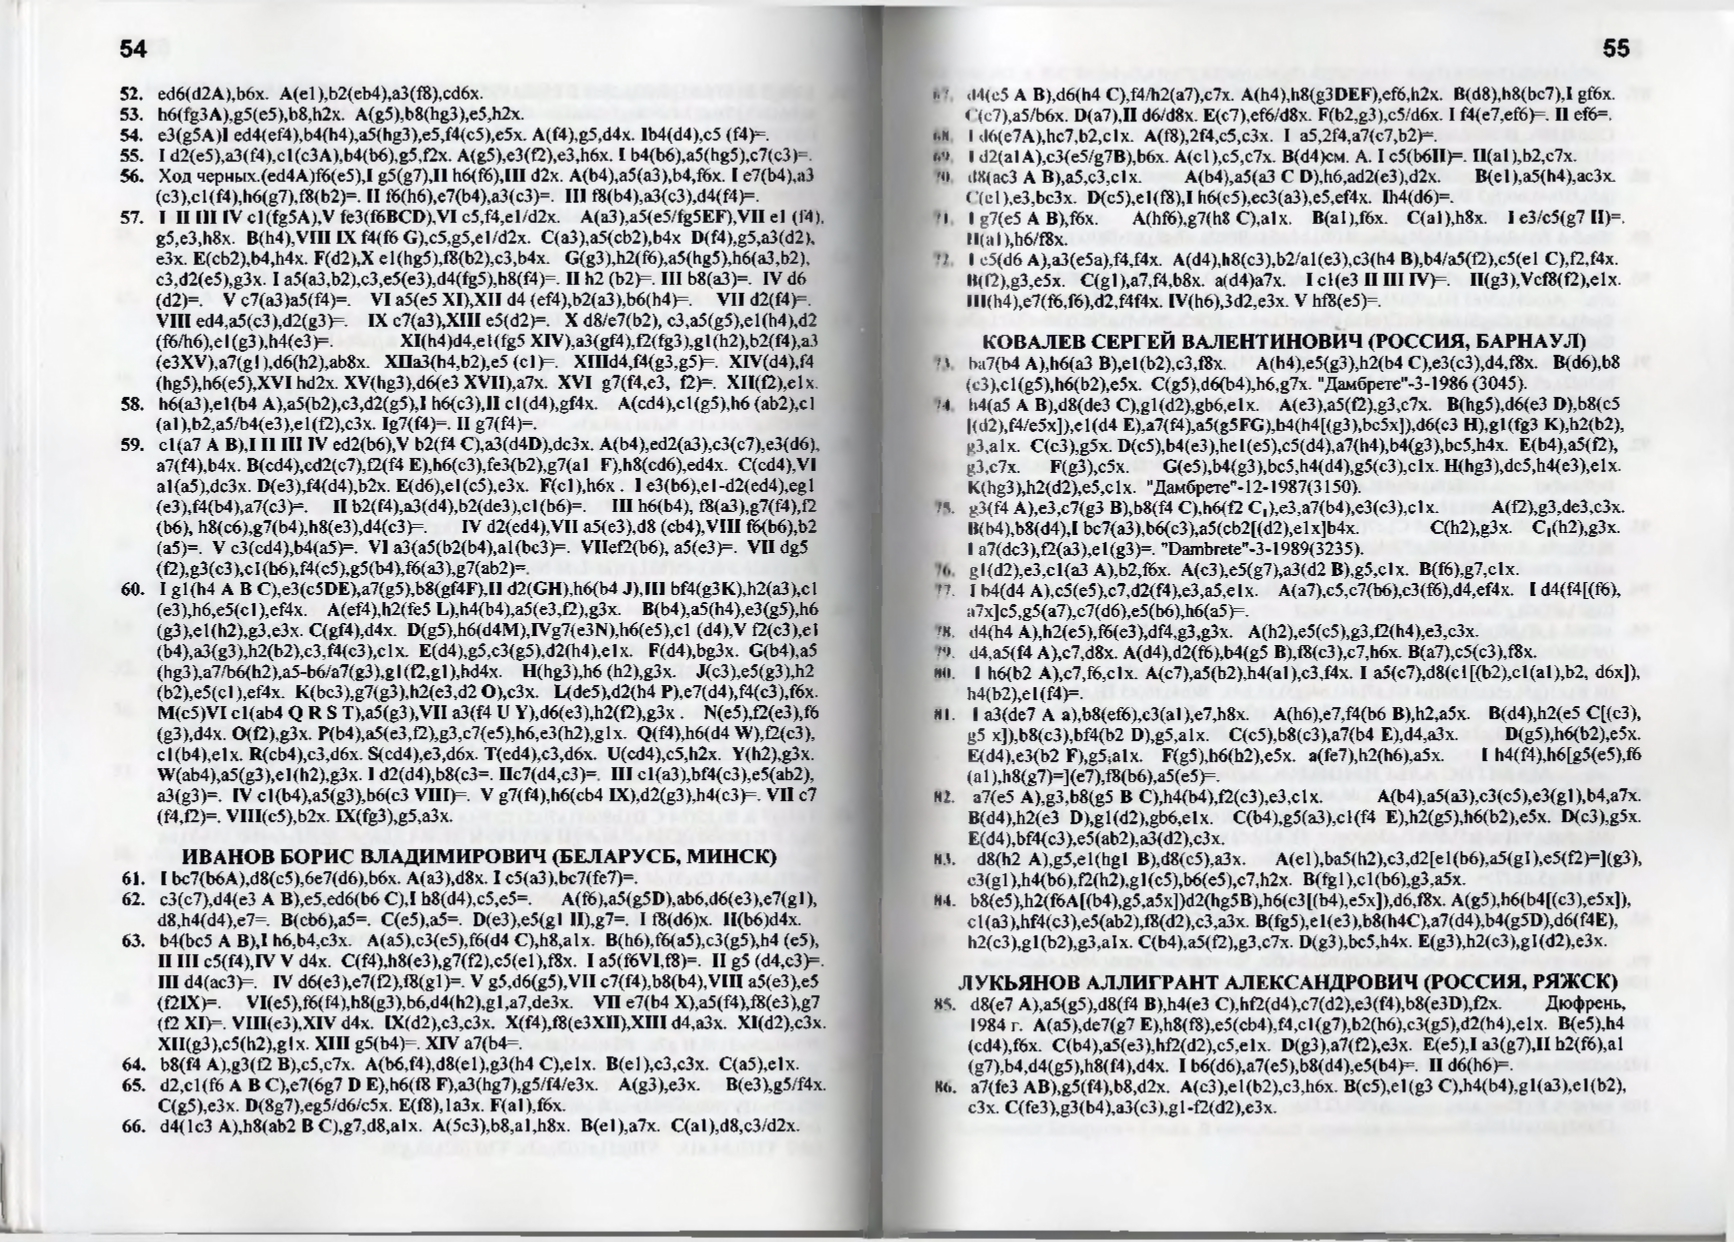 Gorin-Chempionat_mira_po_shashechnoy_kompozitsii_1994-339_page-0029.jpg